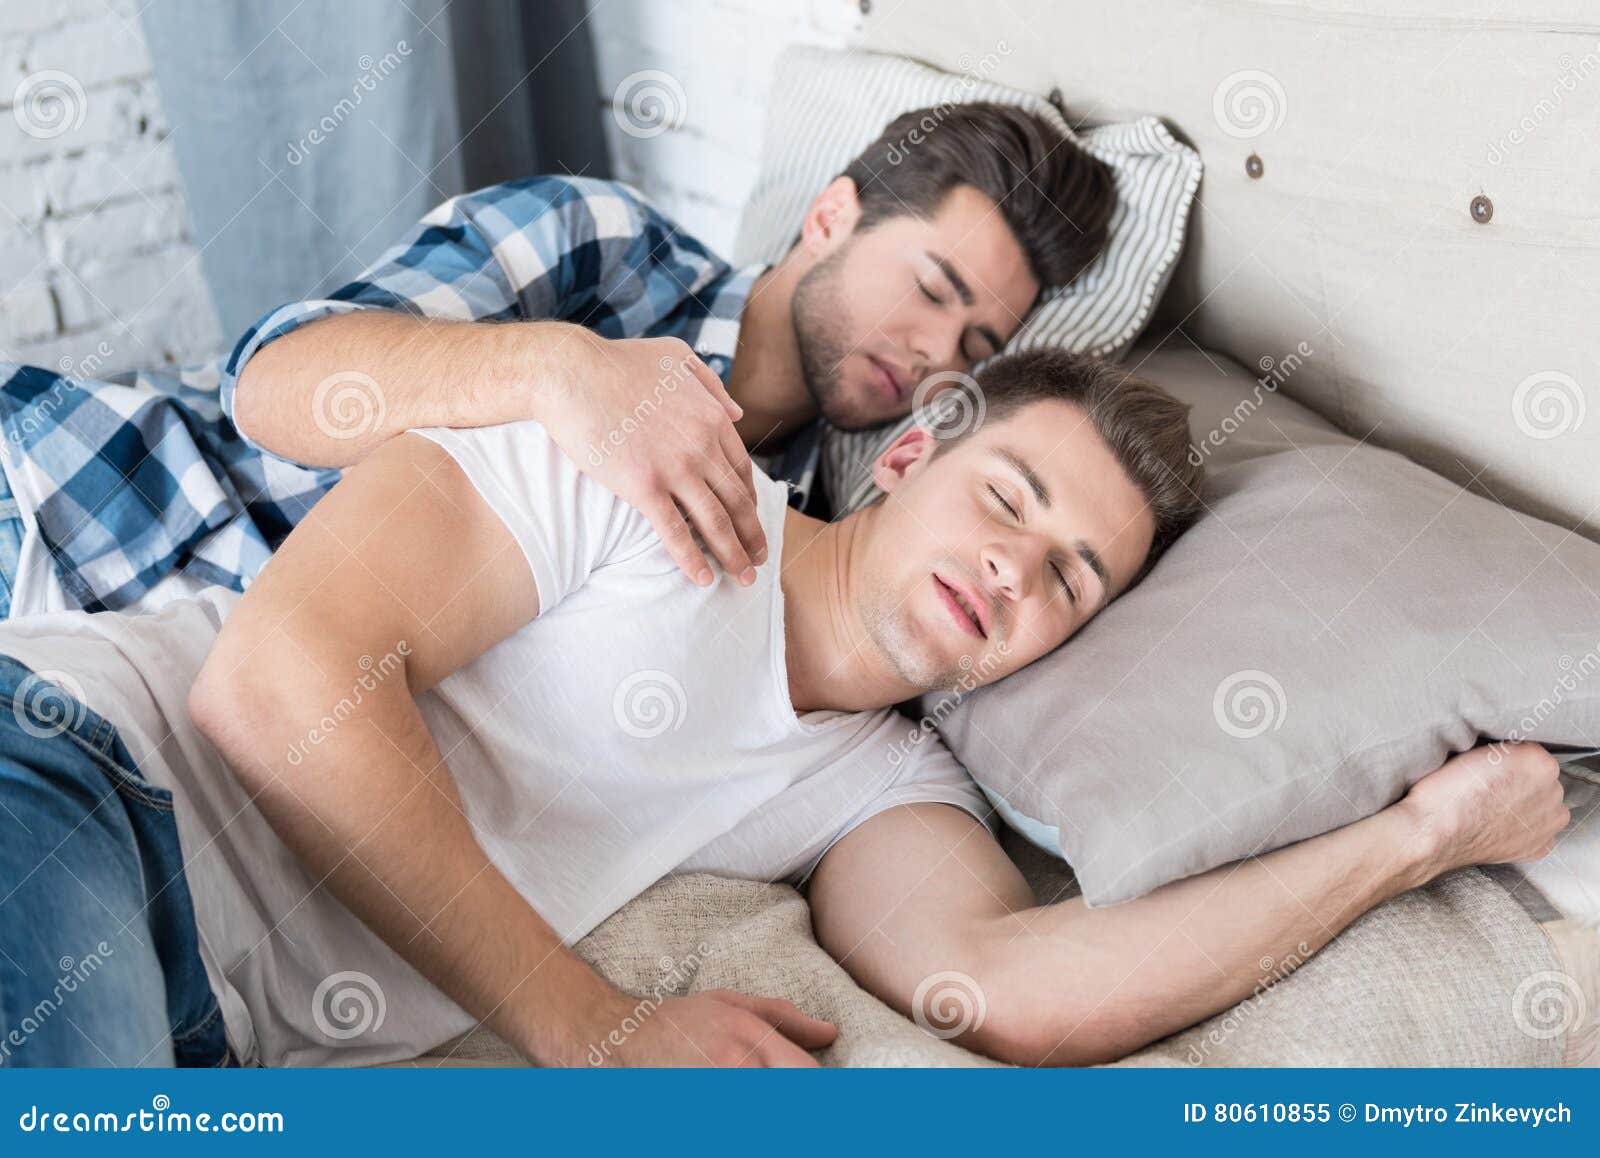 boys Sleeping gay